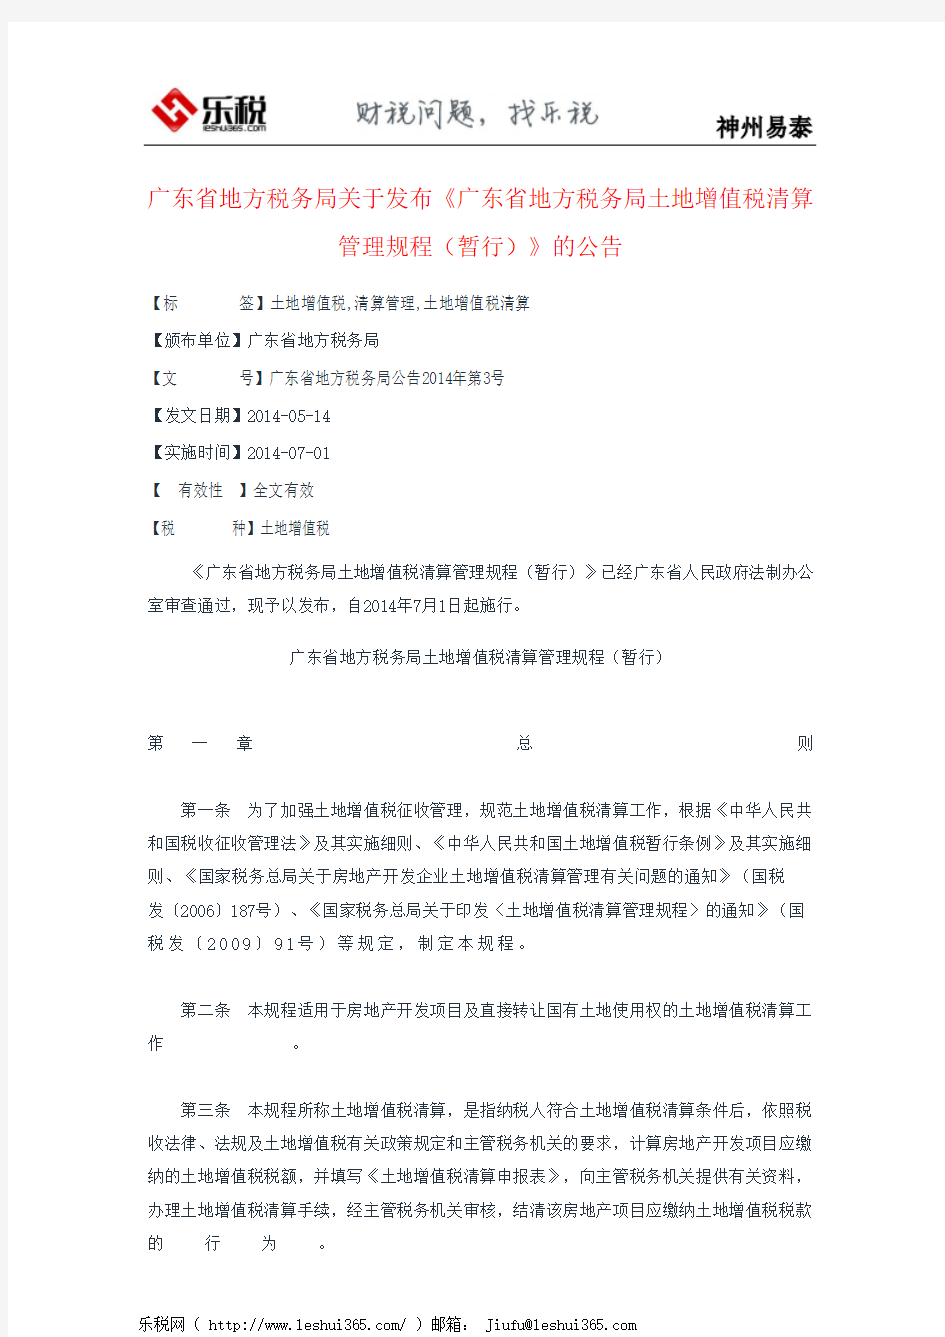 广东省地方税务局关于发布《广东省地方税务局土地增值税清算管理